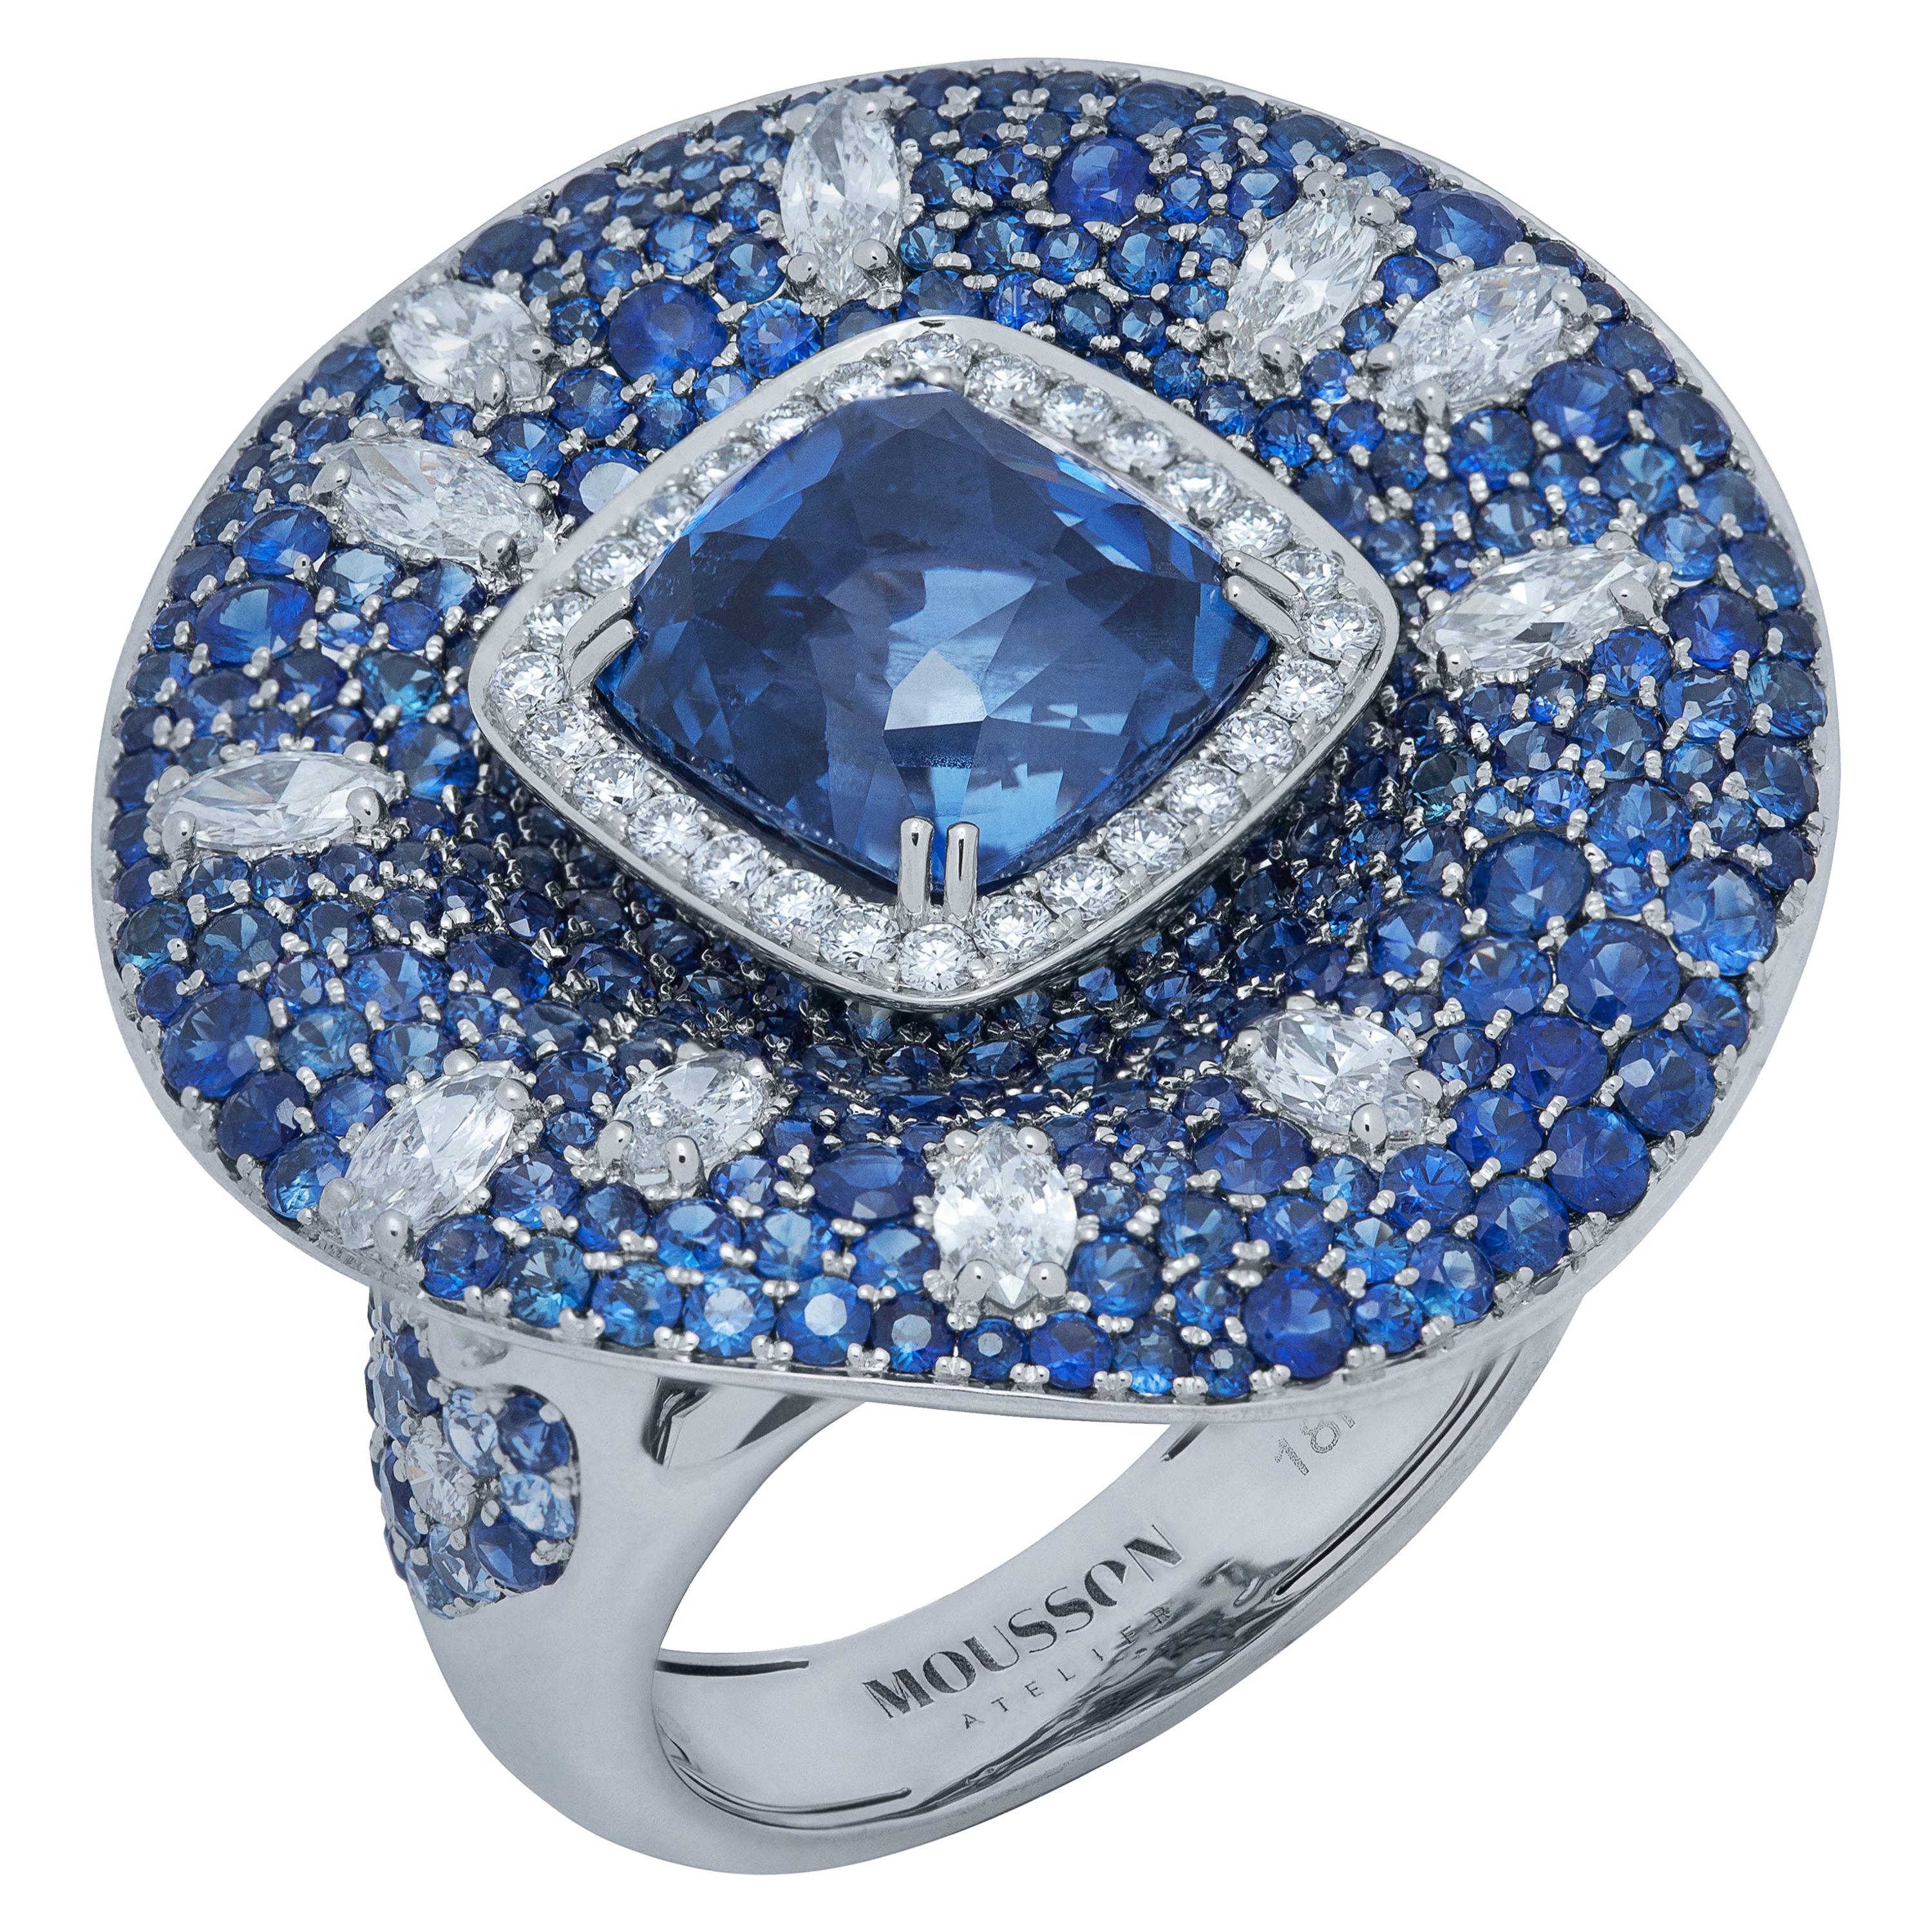 AIGS Certified 6.14 Carat Sapphire Diamonds 18 Karat White Gold Ring